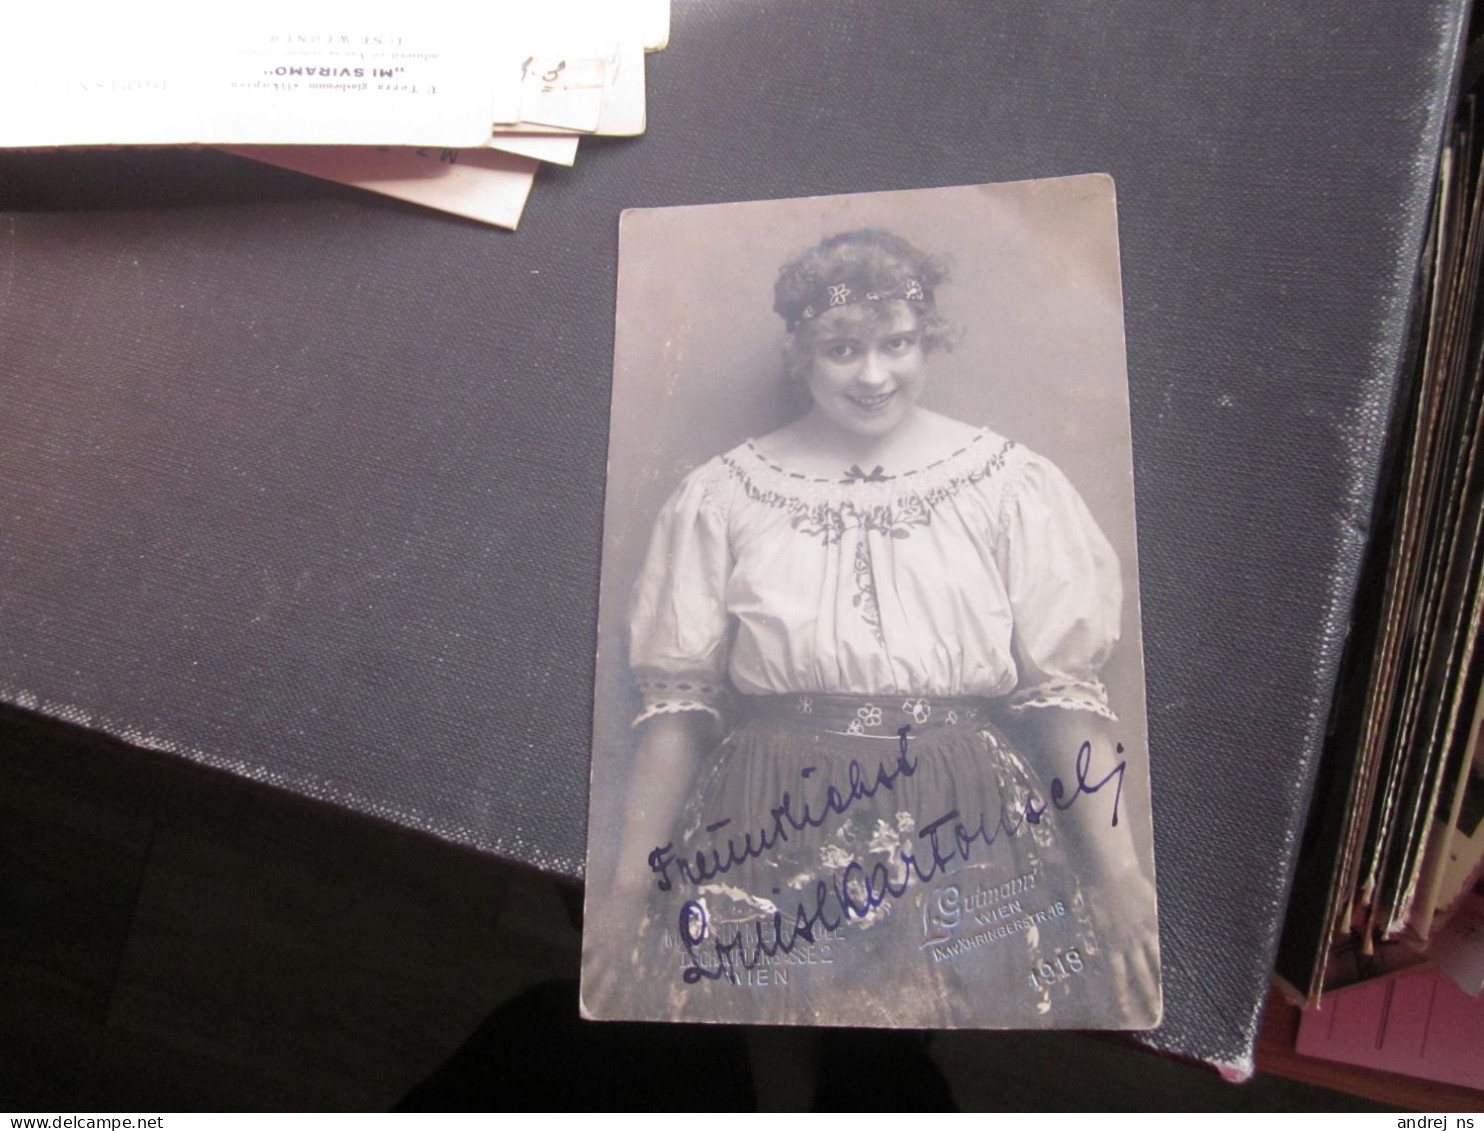 Louise K THEATER STAR  Autographs Signatures L Gutmann Wien 1918 - Actors & Comedians